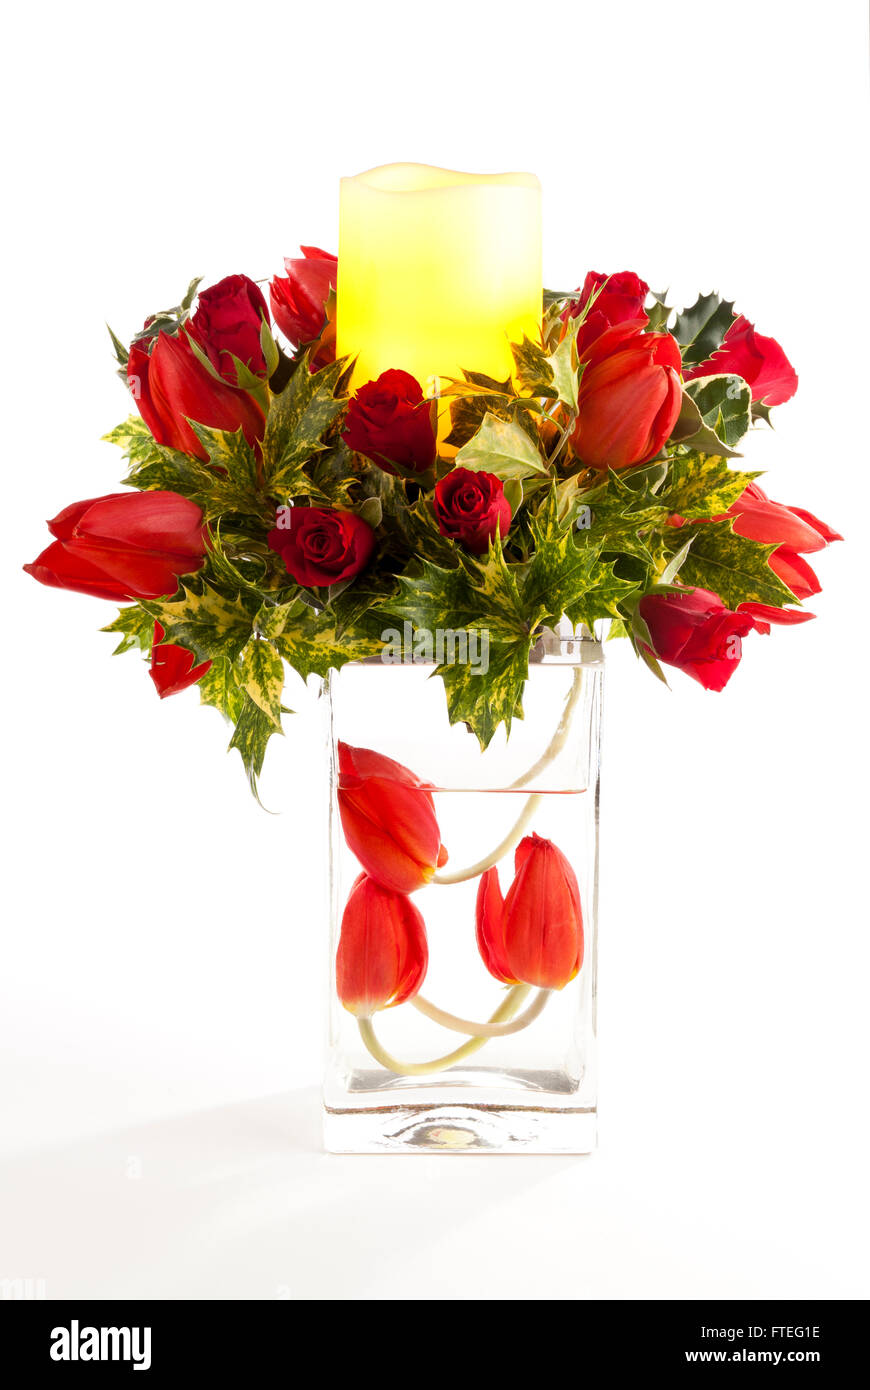 Un arrangement de fleurs à l'aide de tulipes rouges, de roses, d'osmanthus et allumé une bougie de cire Banque D'Images